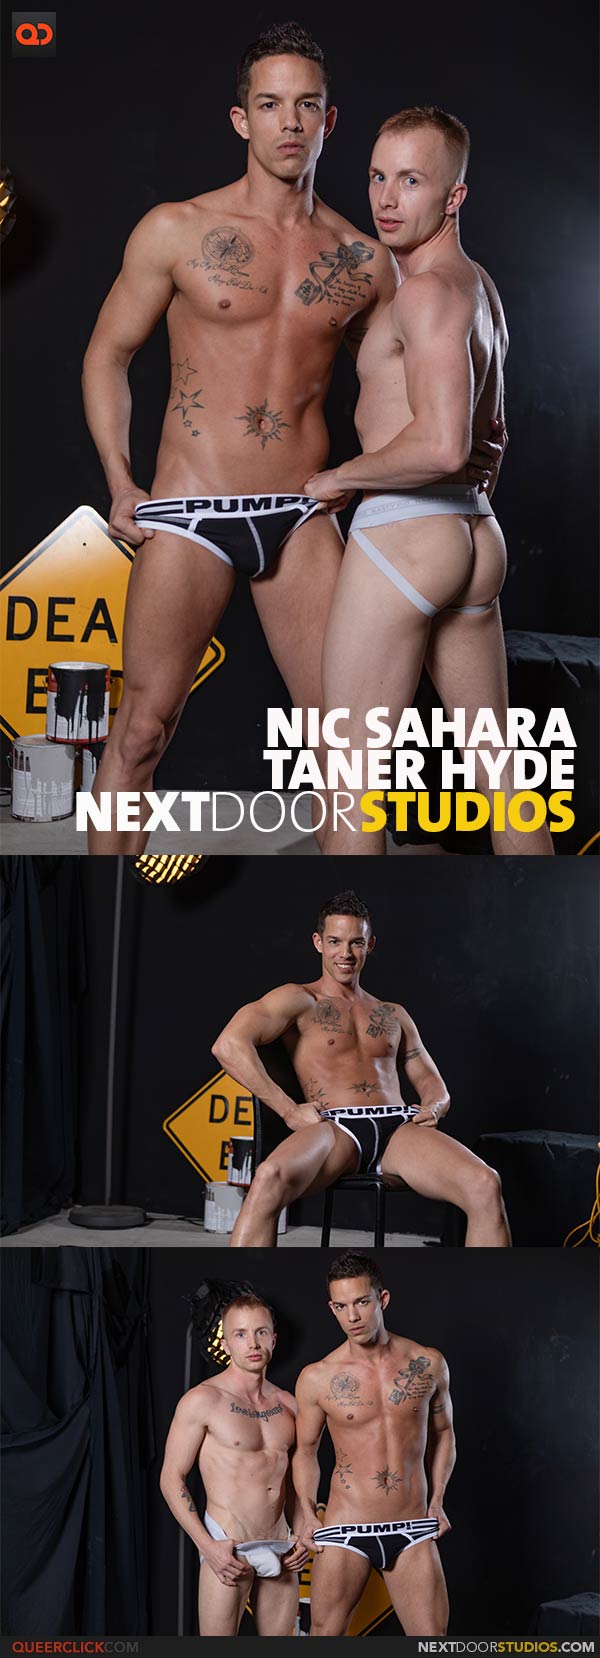 NextDoorStudios: Tanner Hyde and Nic Sahara